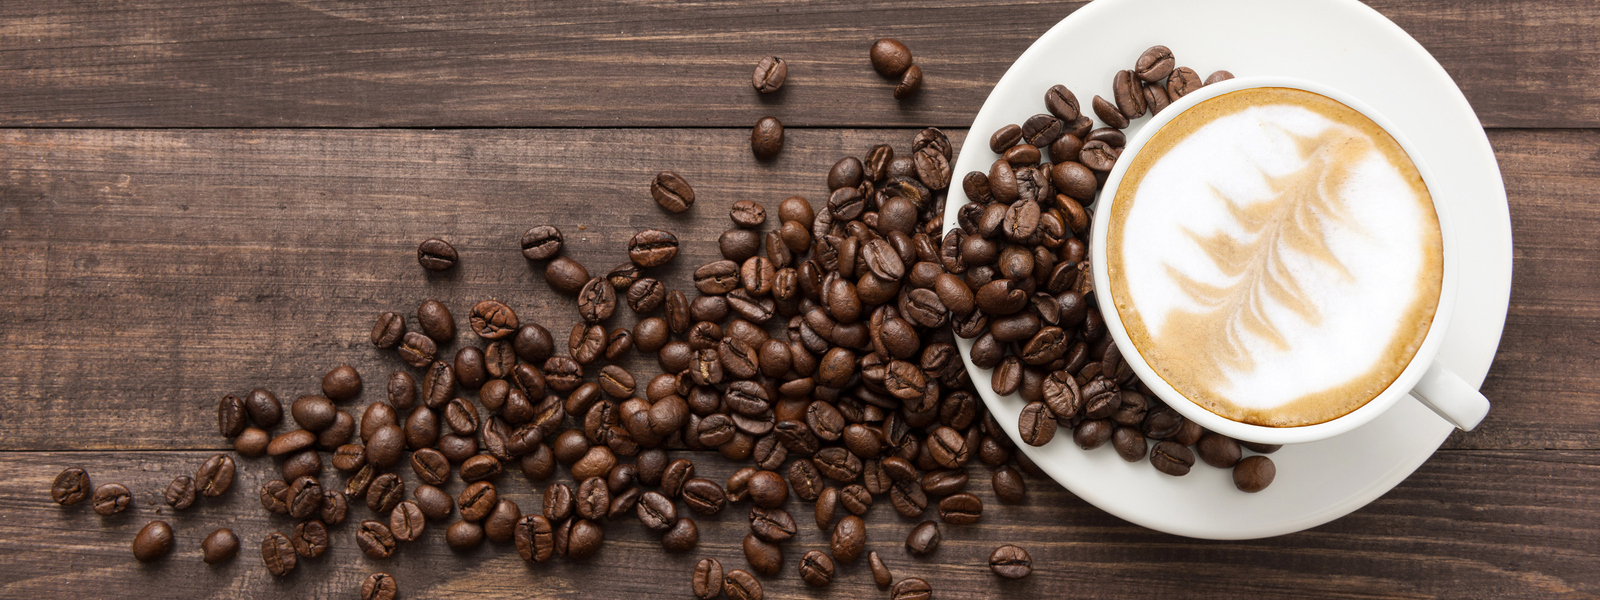 Tipy pre milovníkov kávy: Ako pripraviť lahodnú kávu v pohodlí domova?